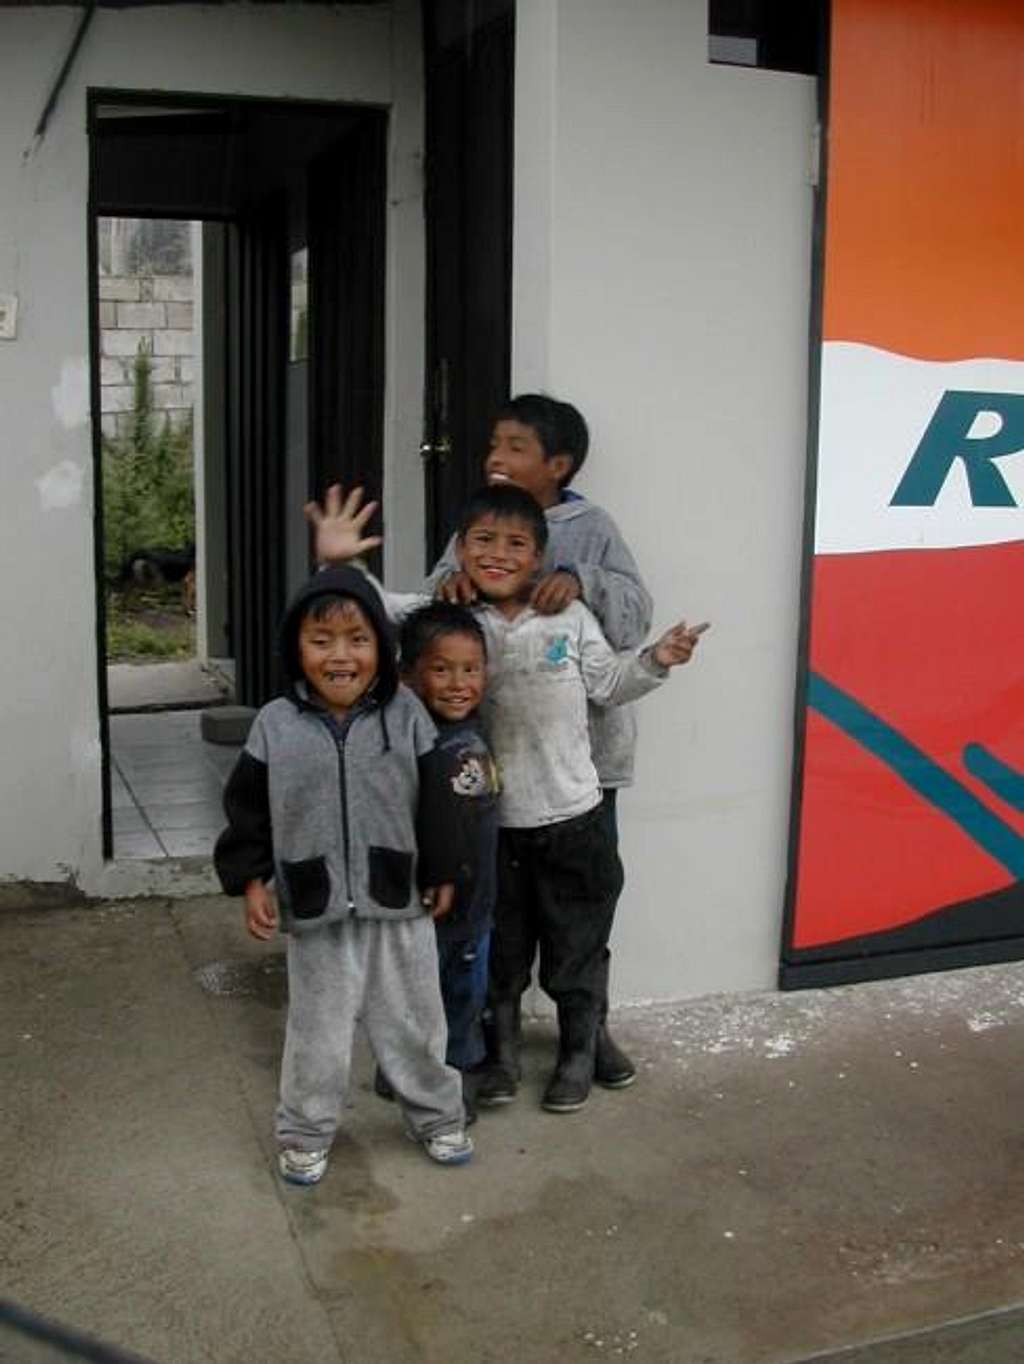 Group of Ecuadorian kids...